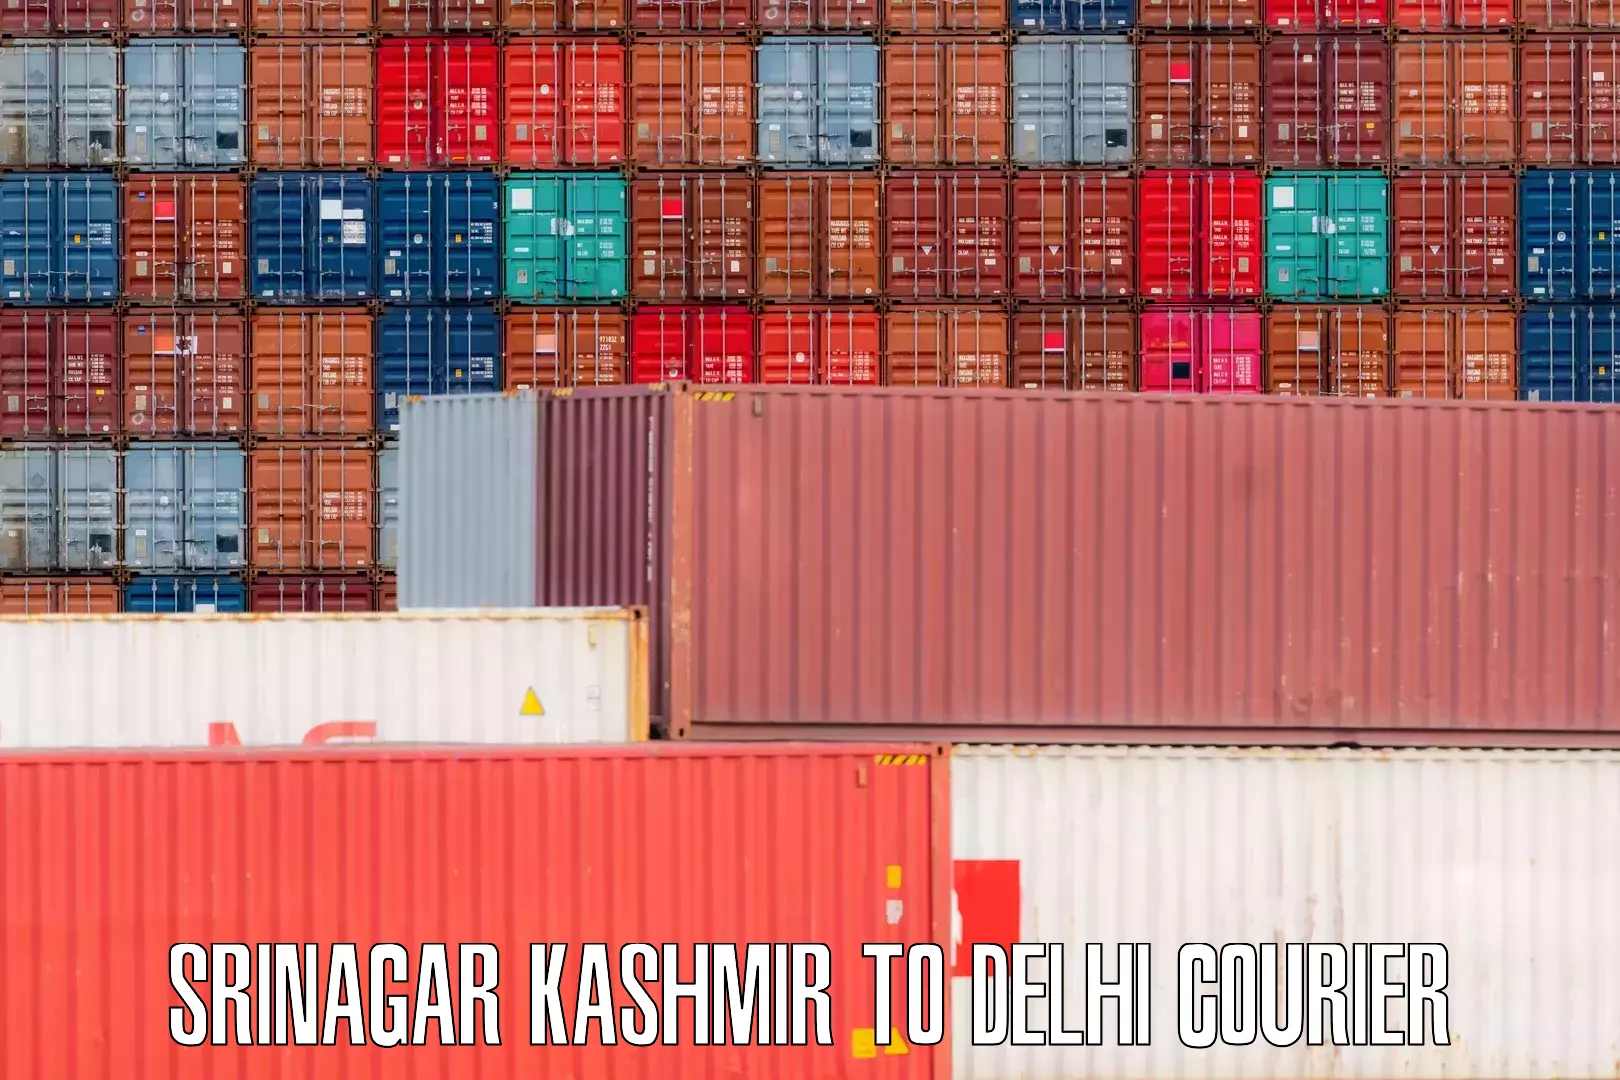 Luggage transport company Srinagar Kashmir to Delhi